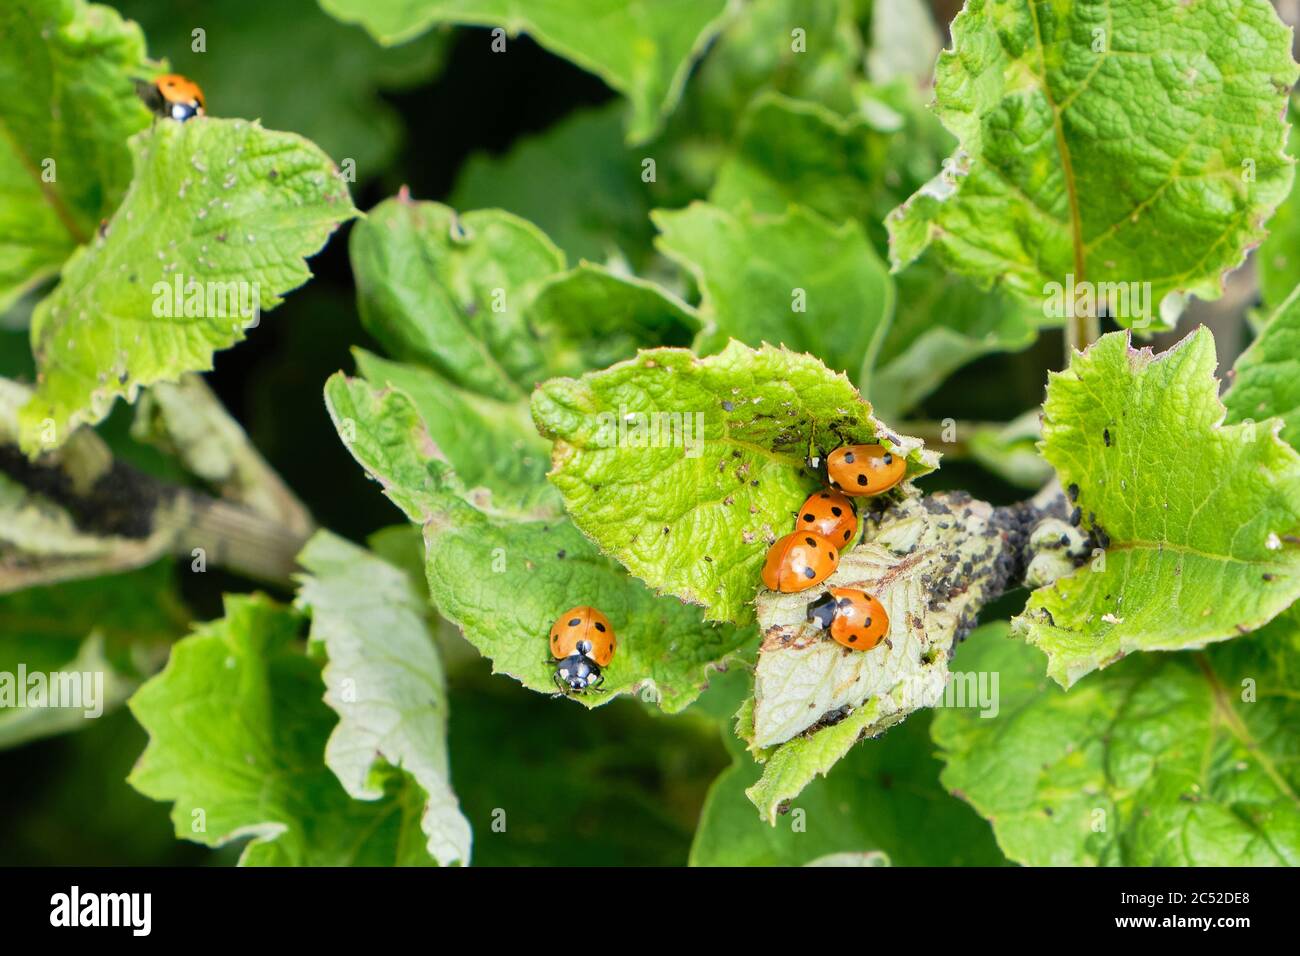 Siete aves mariquitas Coccinell septempunctata se alimentan de áfidos en una planta de Asteraceae en junio, control biológico de plagas Foto de stock